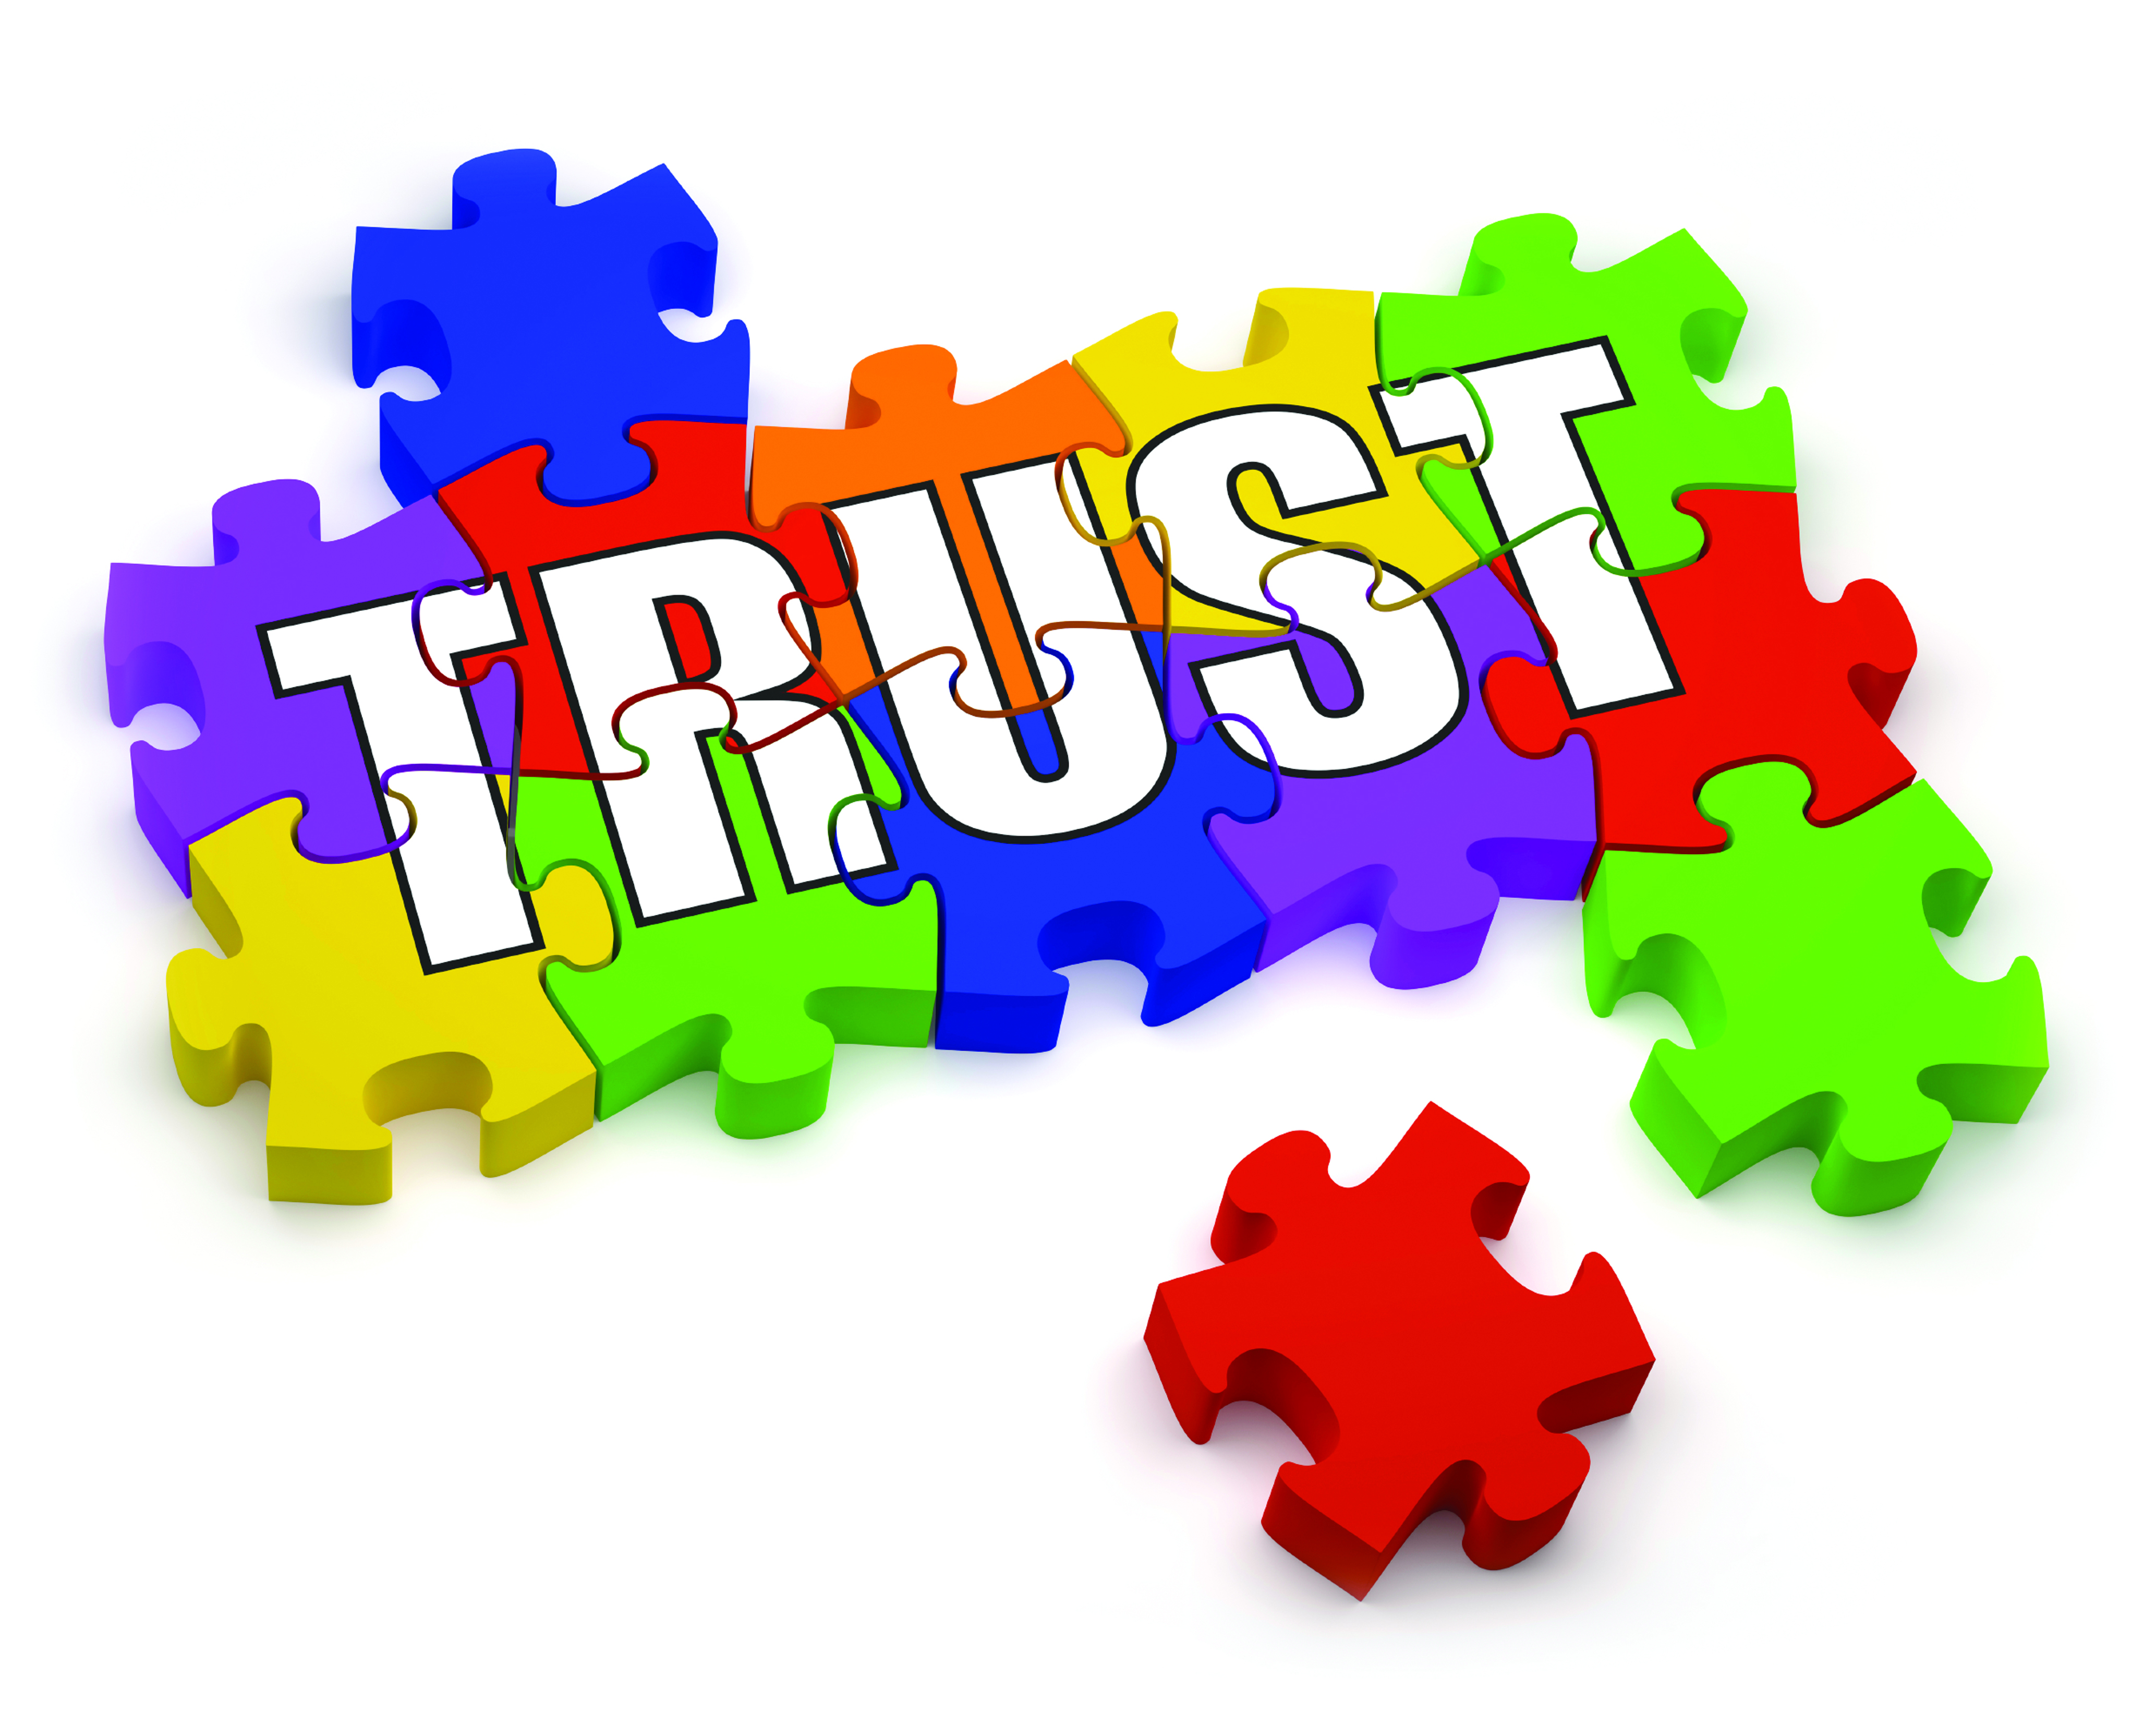 UK quashes fears of public trust register